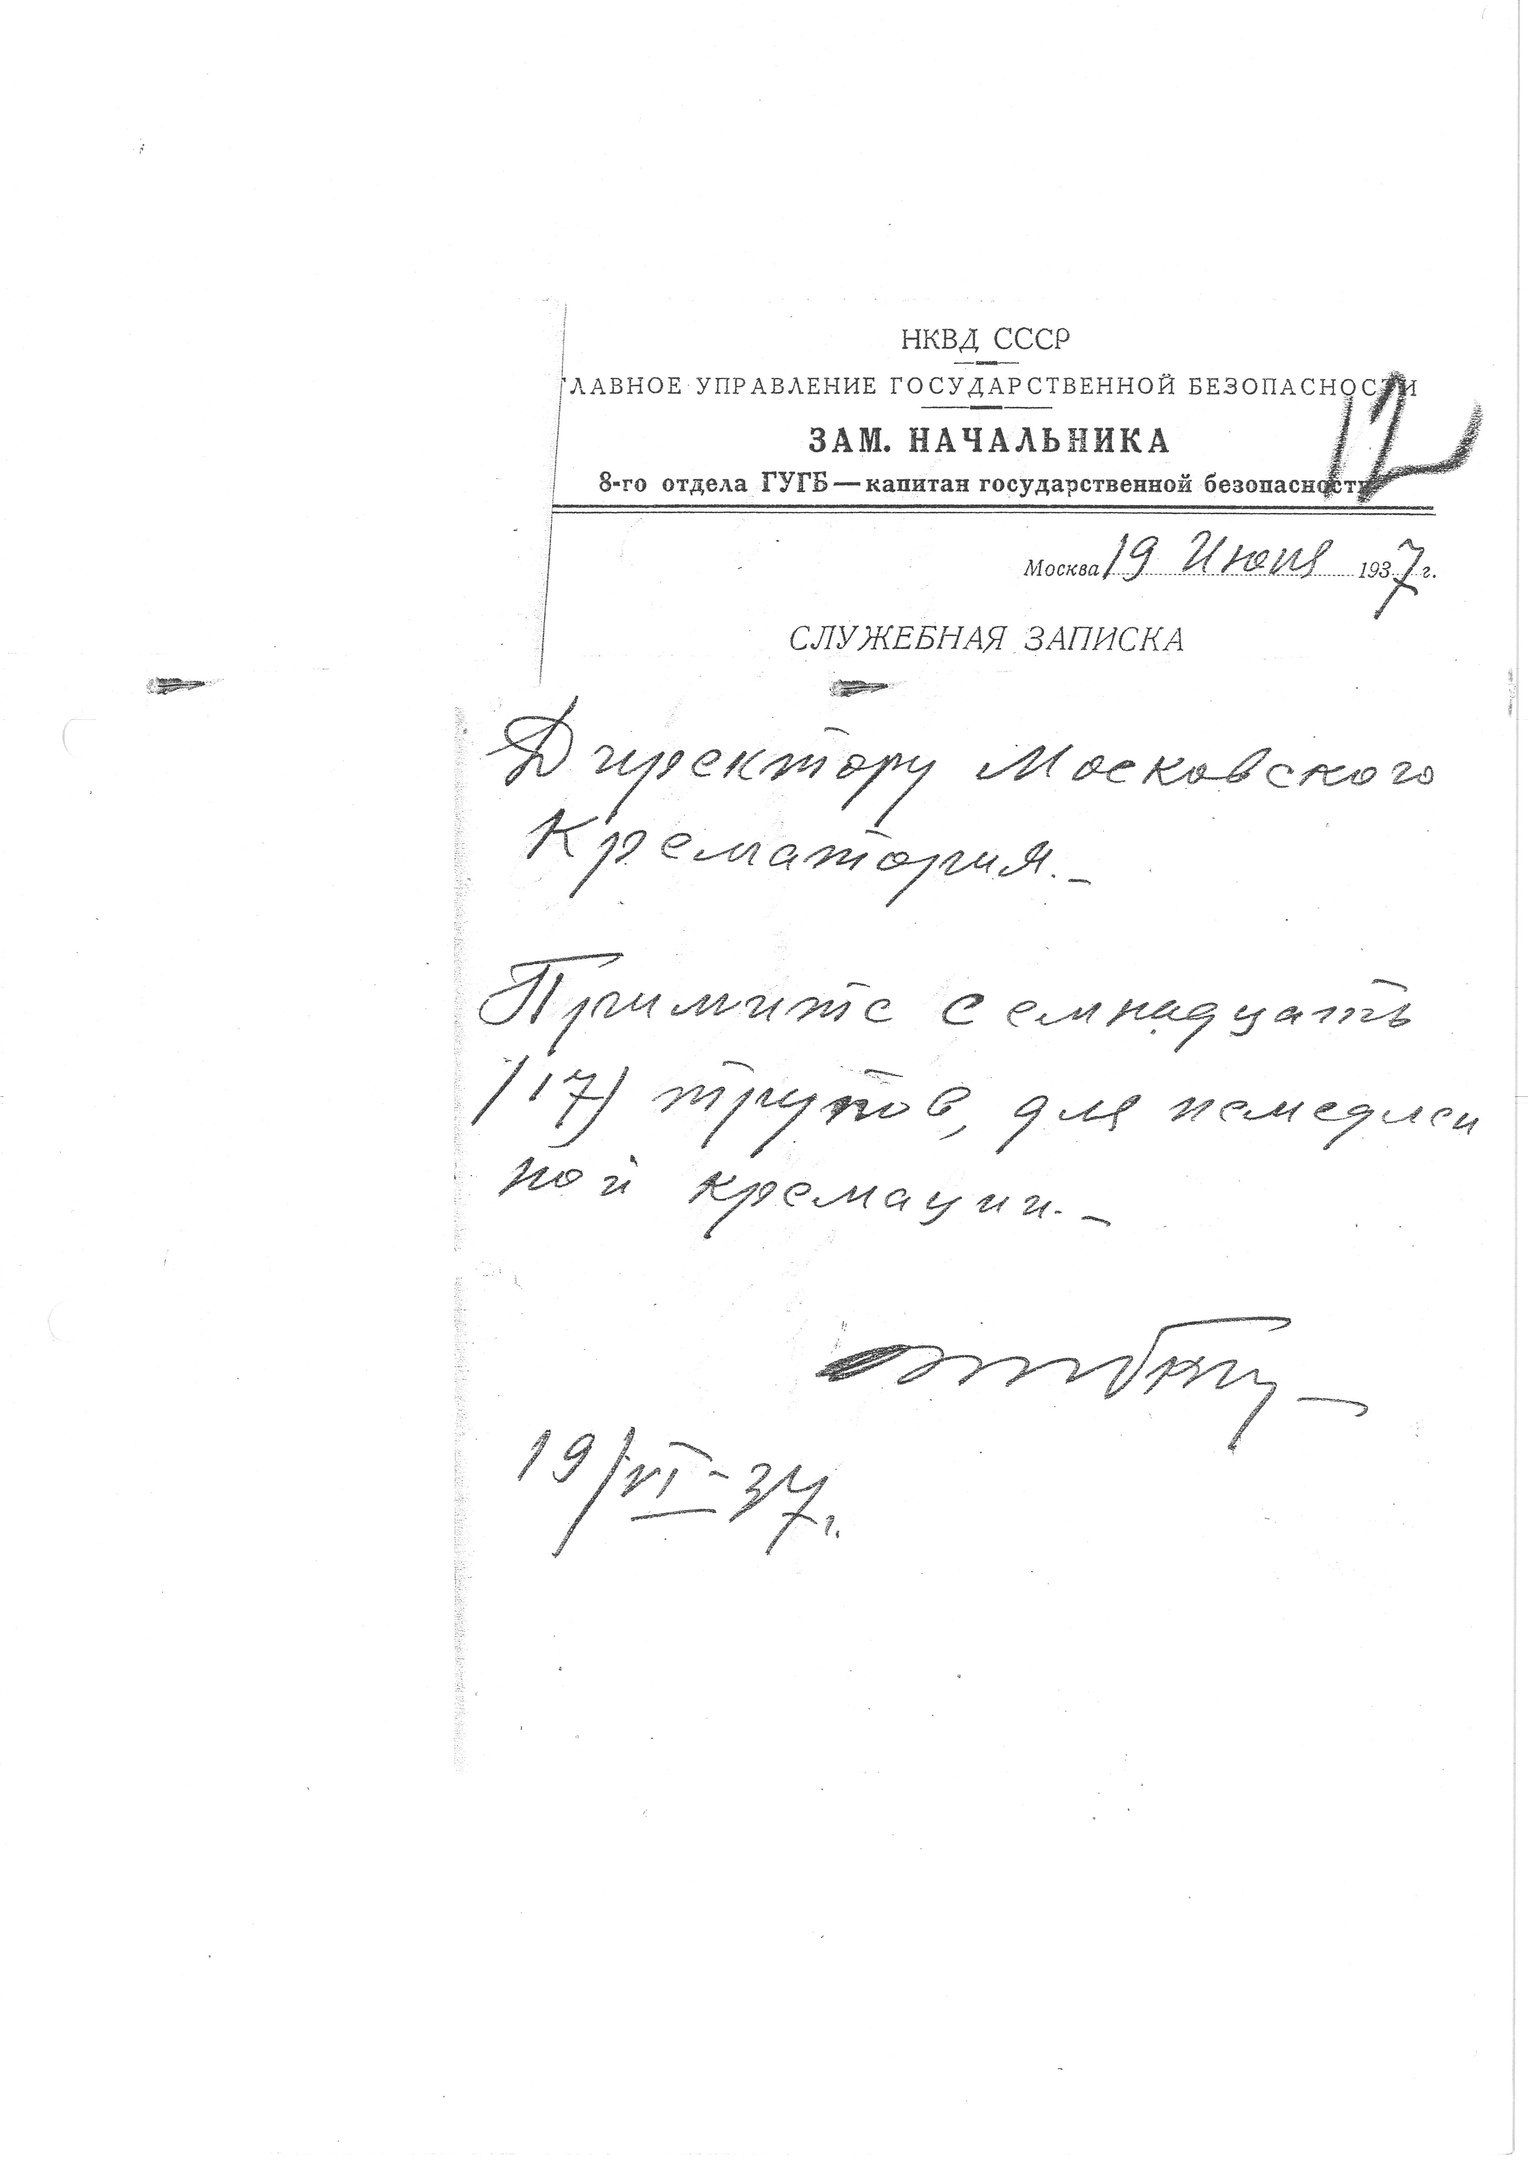 Предписание на кремацию (подпись С. Я. Зубкина)